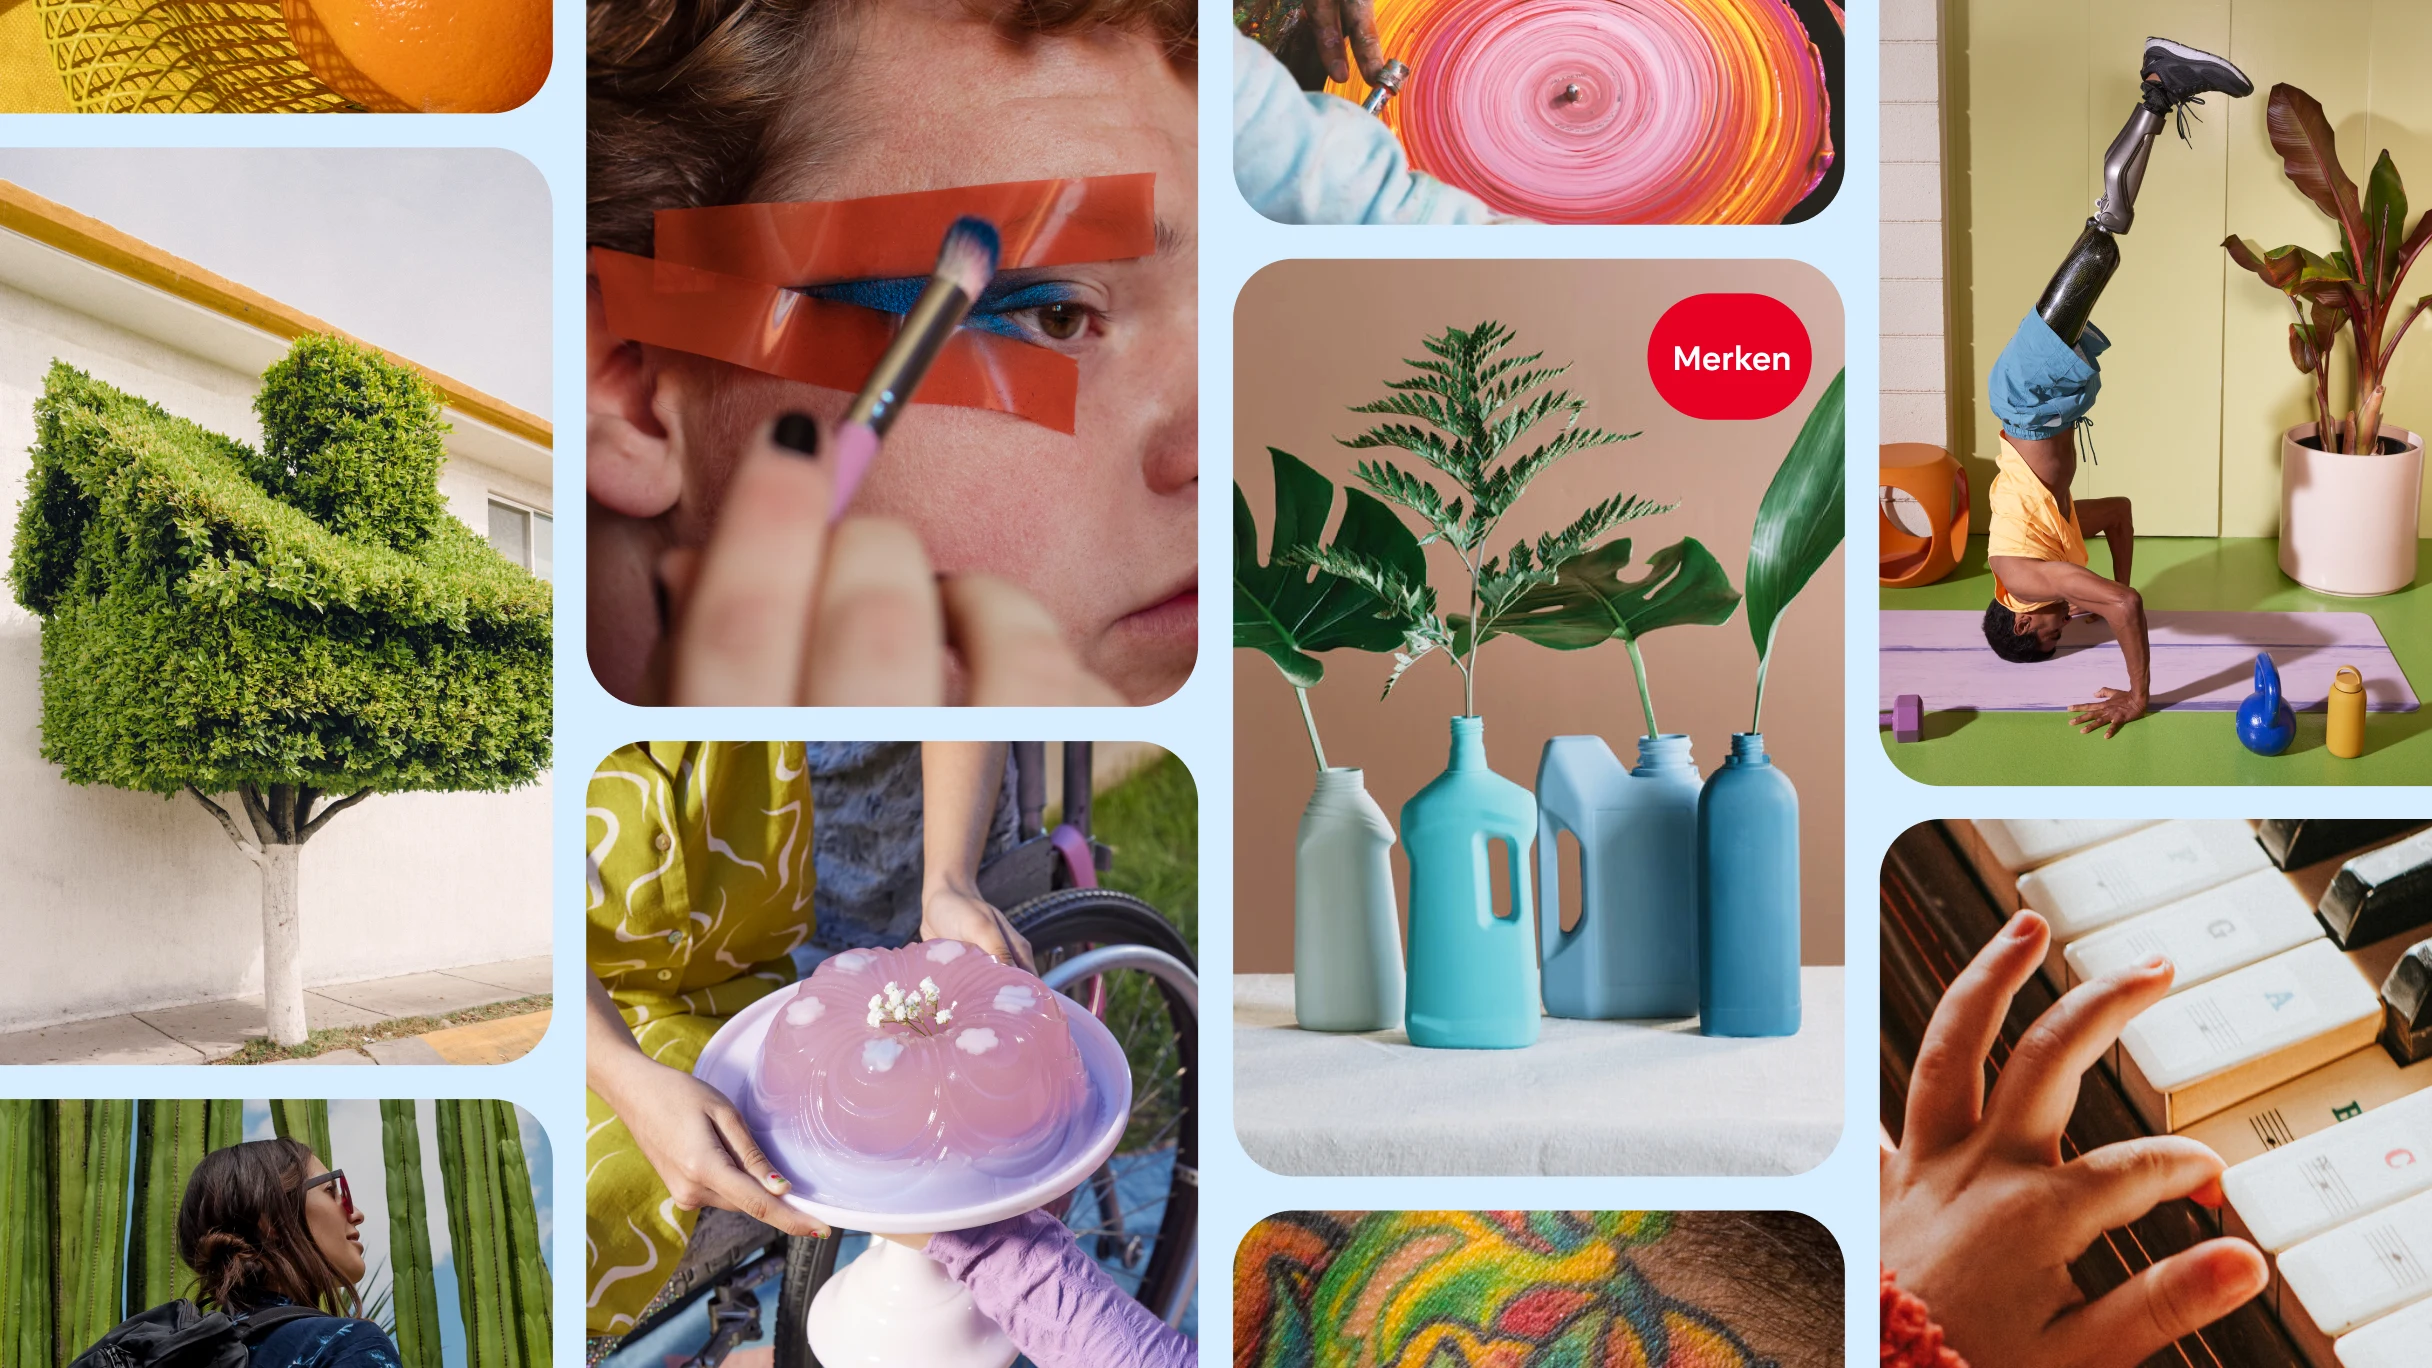  Ein Pinterest-Homefeed mit einer Person, die Make-up aufträgt, grünen Pflanzen in Vasen, einer Person mit Beinprothese im Handstand und mehr.